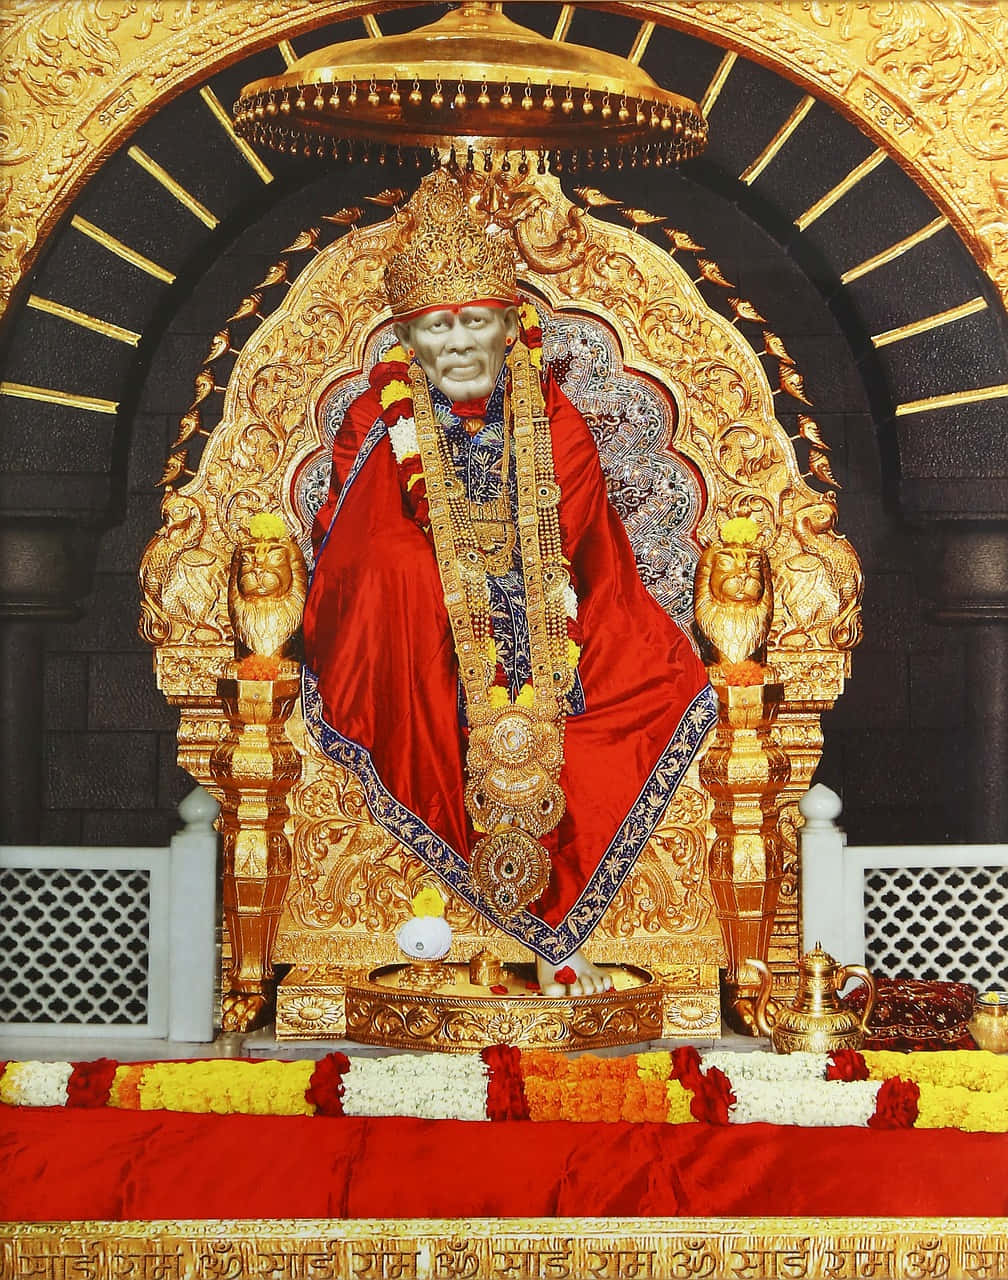 Imagende Sai Baba En Un Templo Dorado.